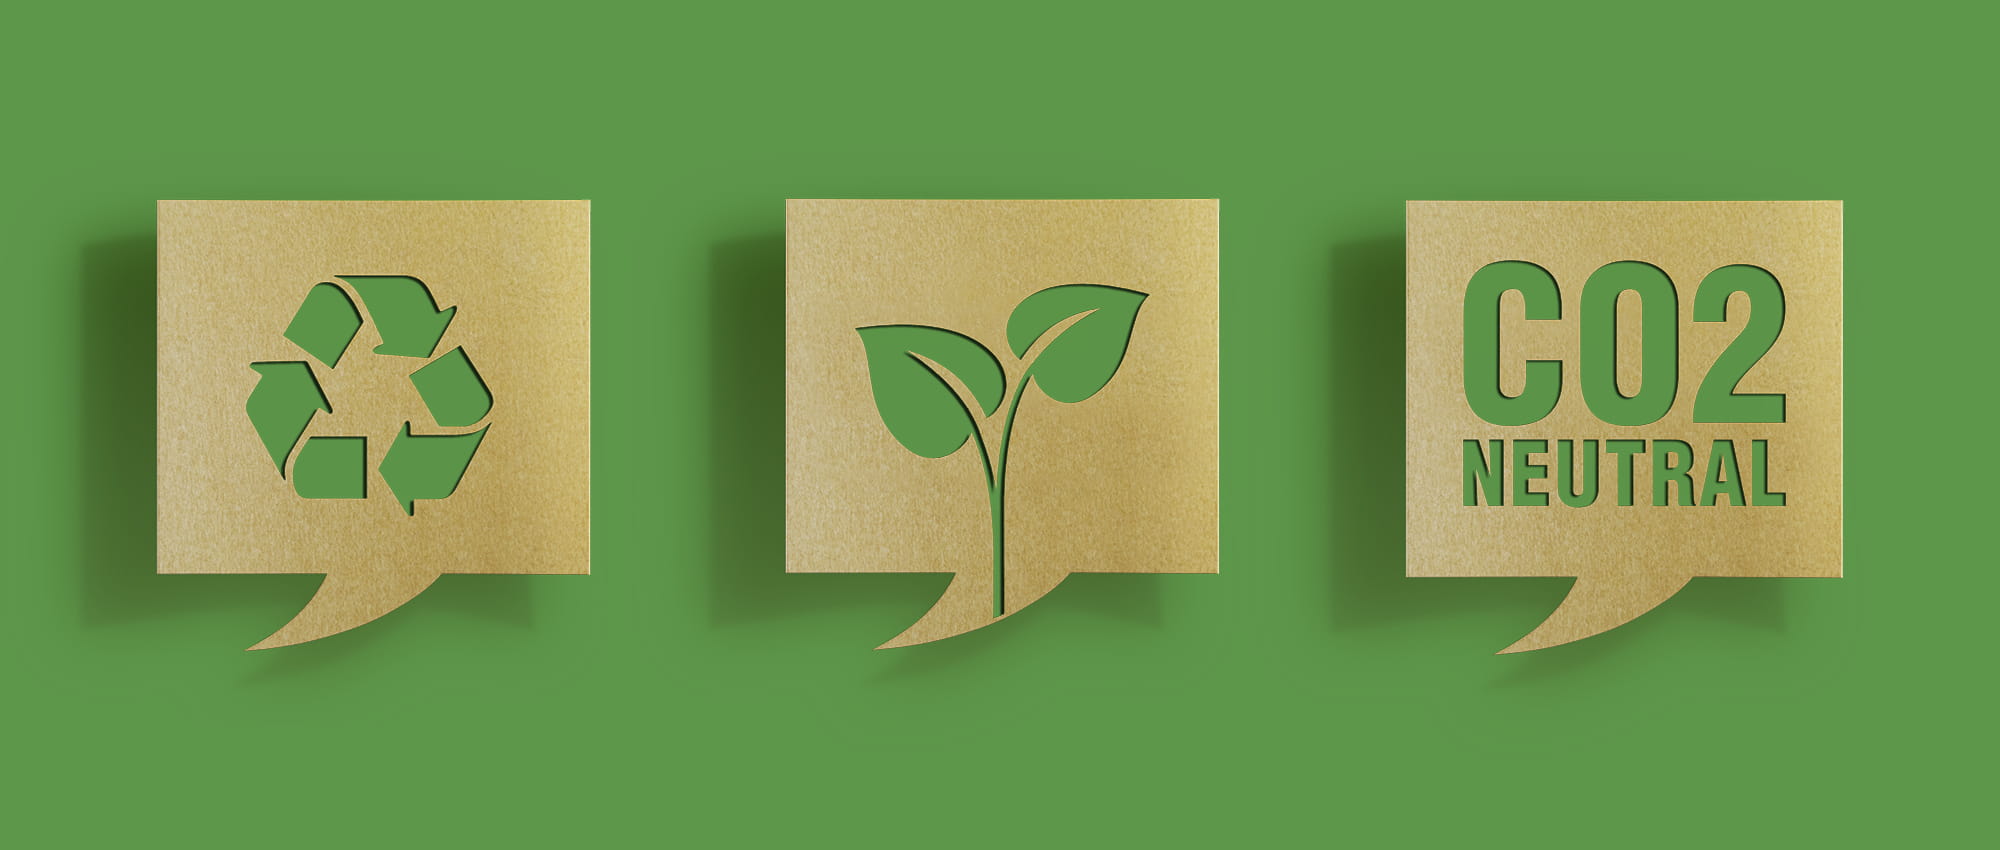 3 Sprechblasen mit einem Recyclesymbol, einer Pflanze und der Aufschrift CO2 neutral, vor grünem Hintergrund.